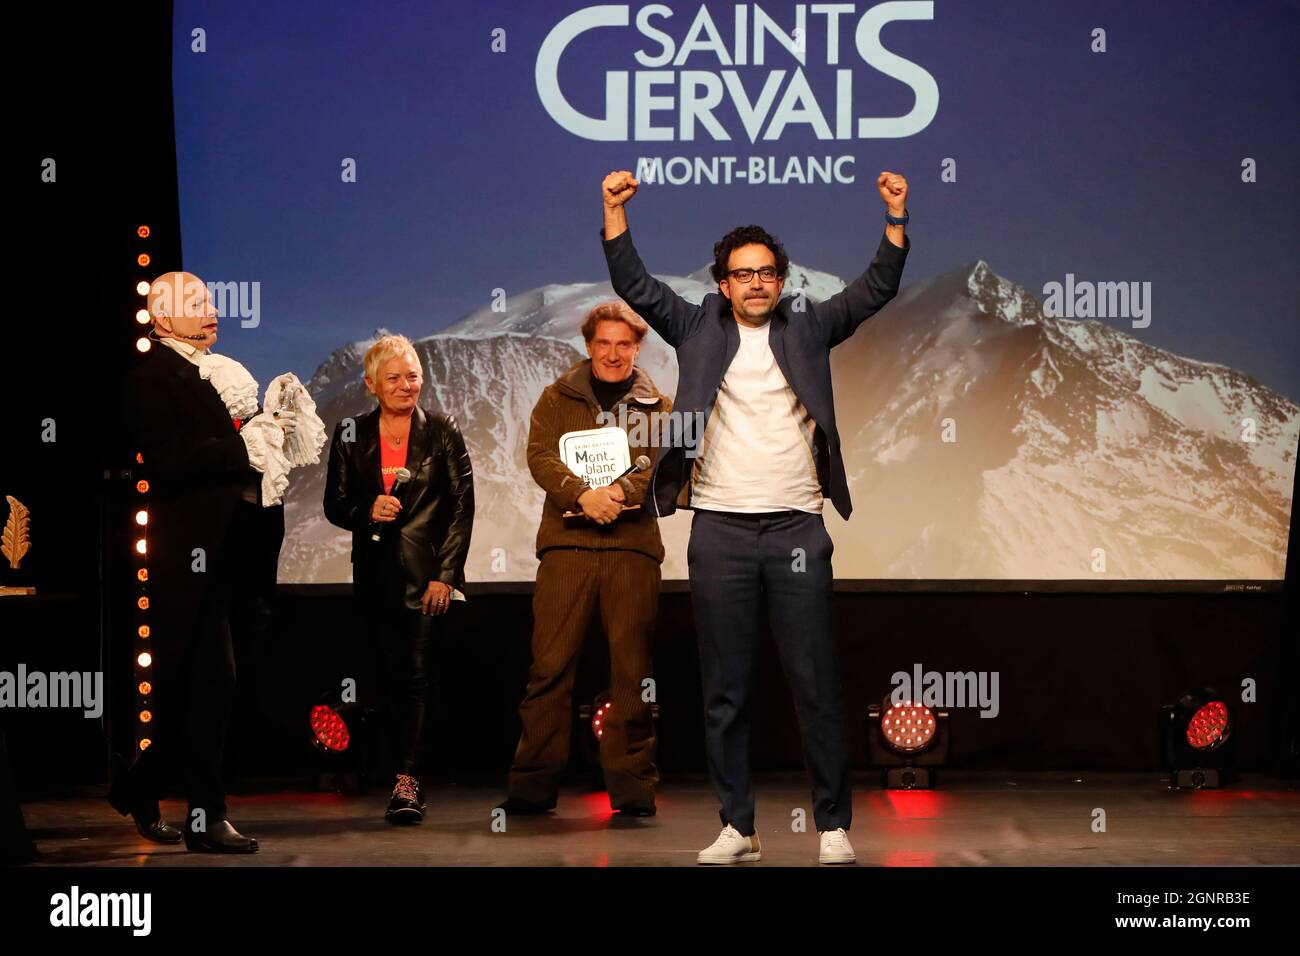 Mont-Blanc d'Humour 2021.  Remise des prix.  Julien Santini, prix Saint-Gervais Mont-Blanc d’Humour Henri Salvador 2021. Saint Gervais les Bains. Fran Stock Photo